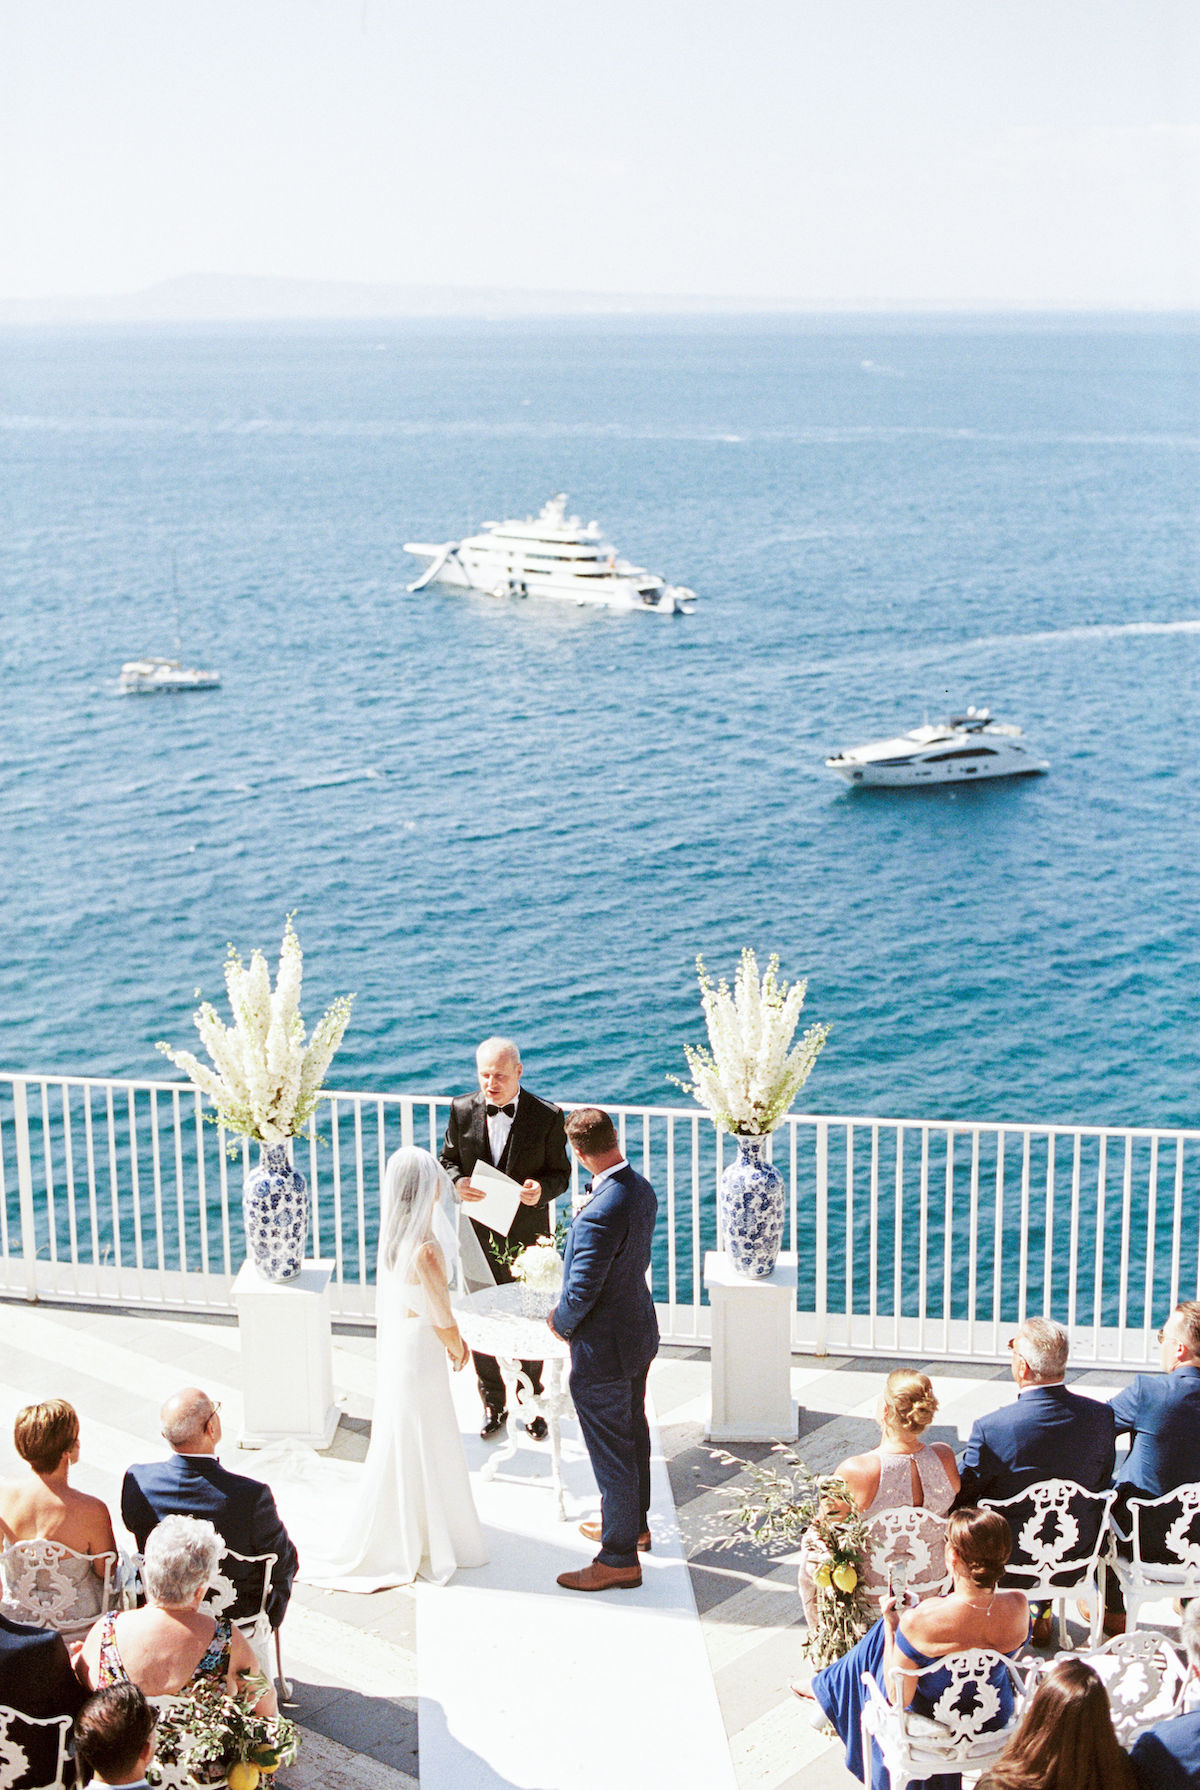 Bride and groom in wedding ceremony on terrace overlooking ocean